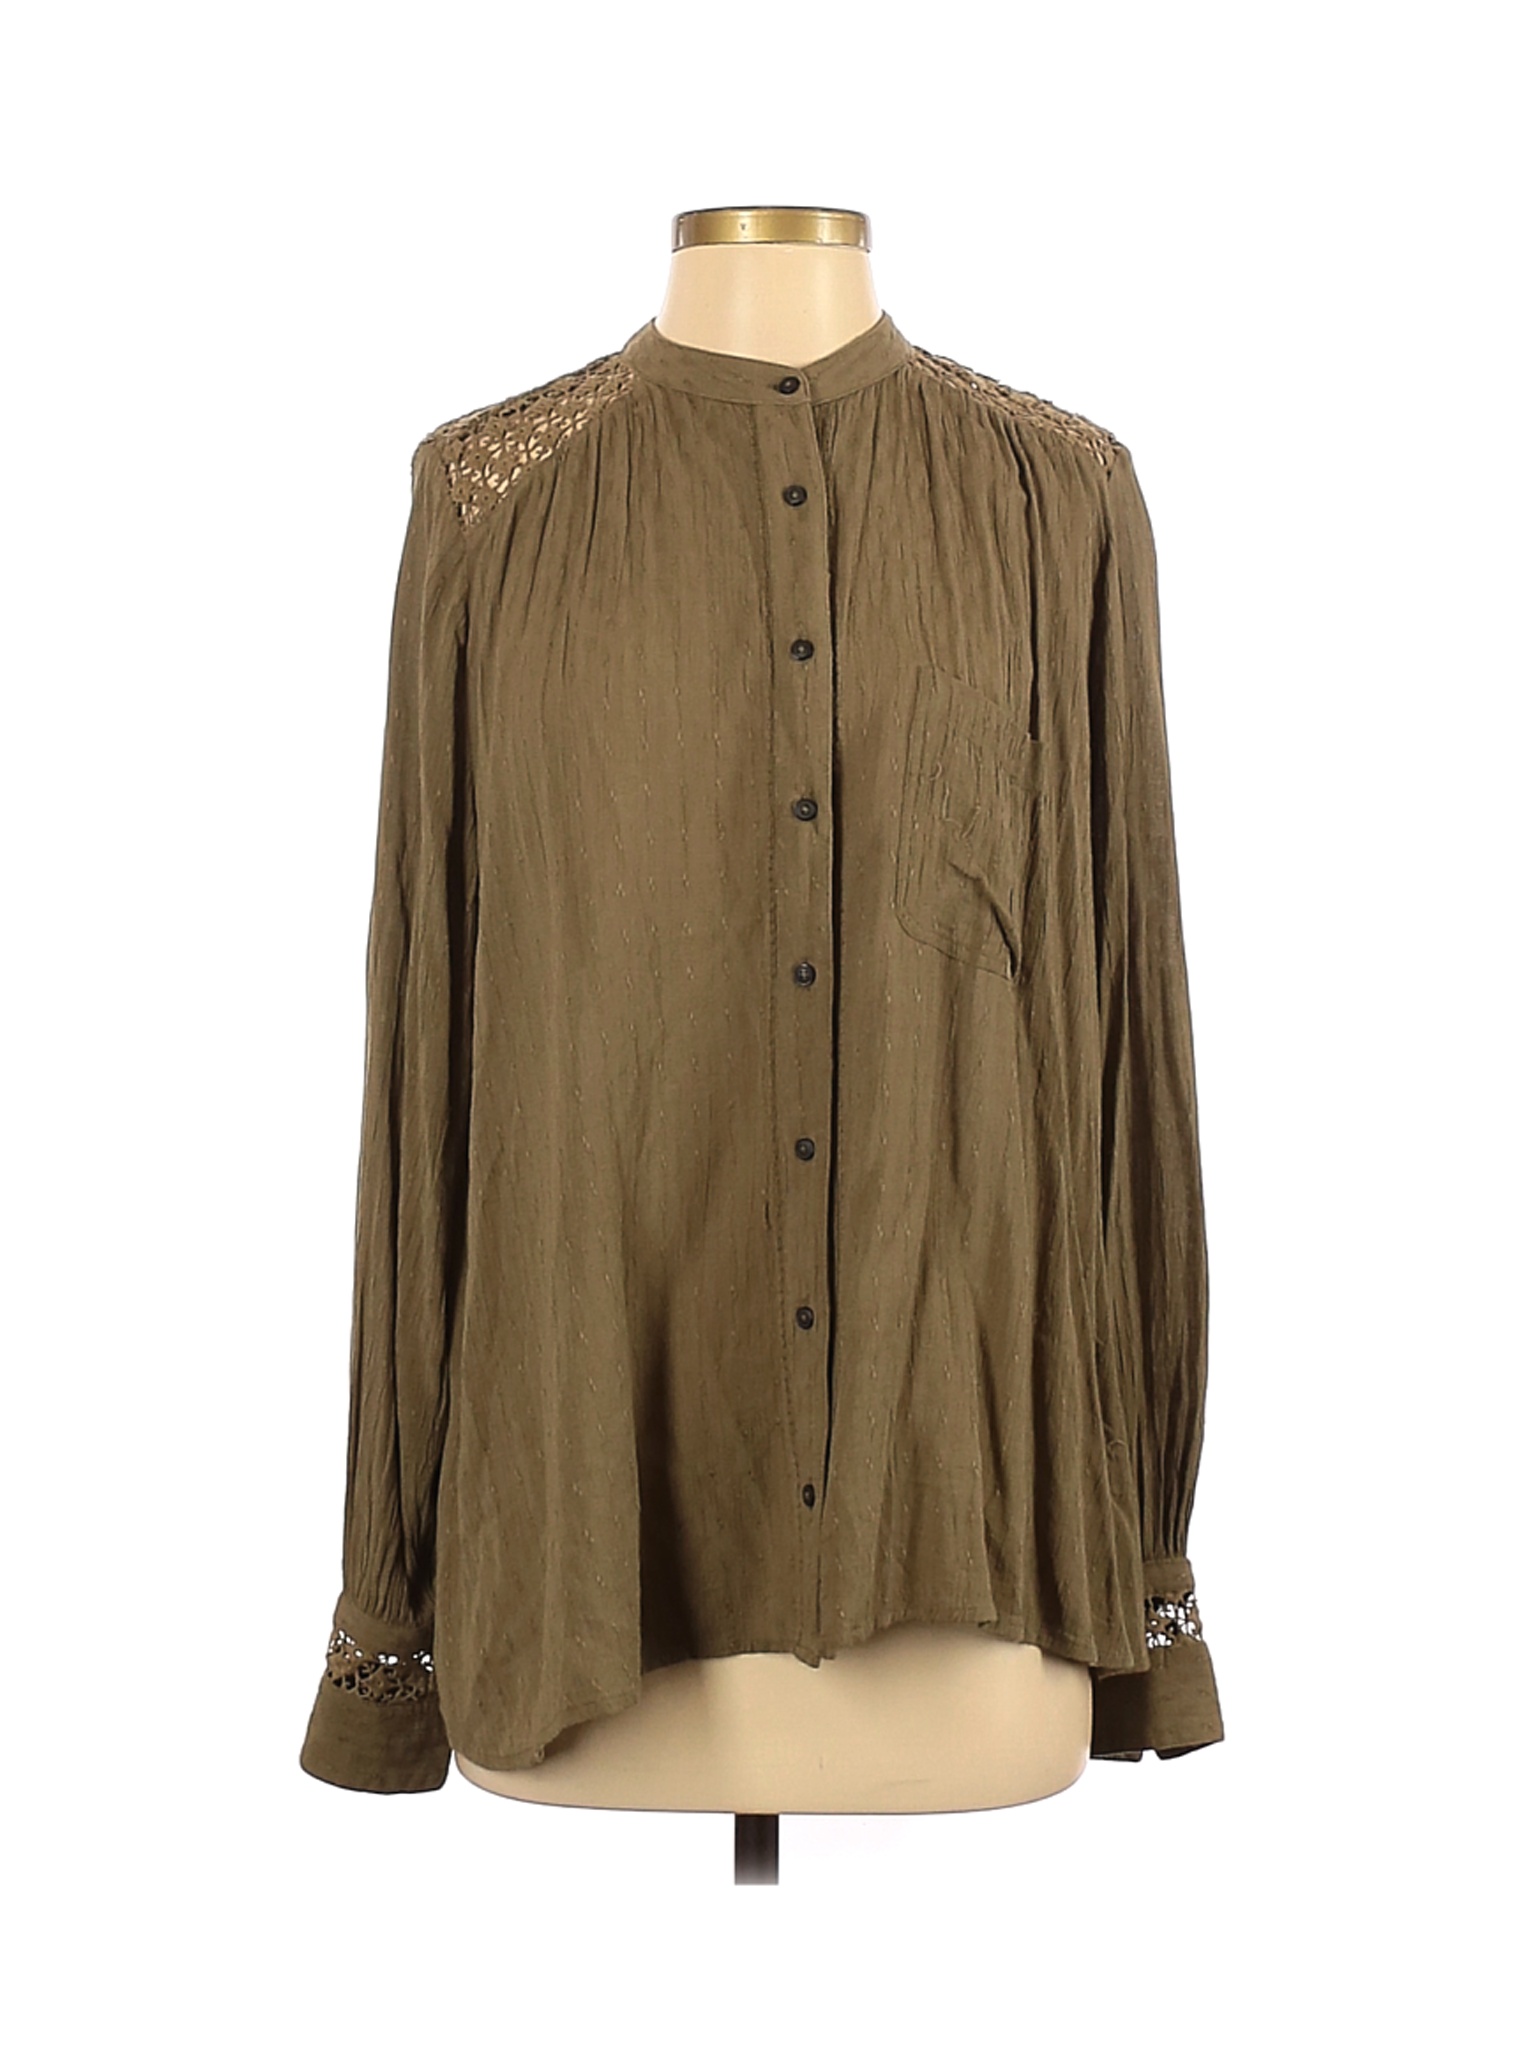 Free People Women Green Long Sleeve Blouse S | eBay